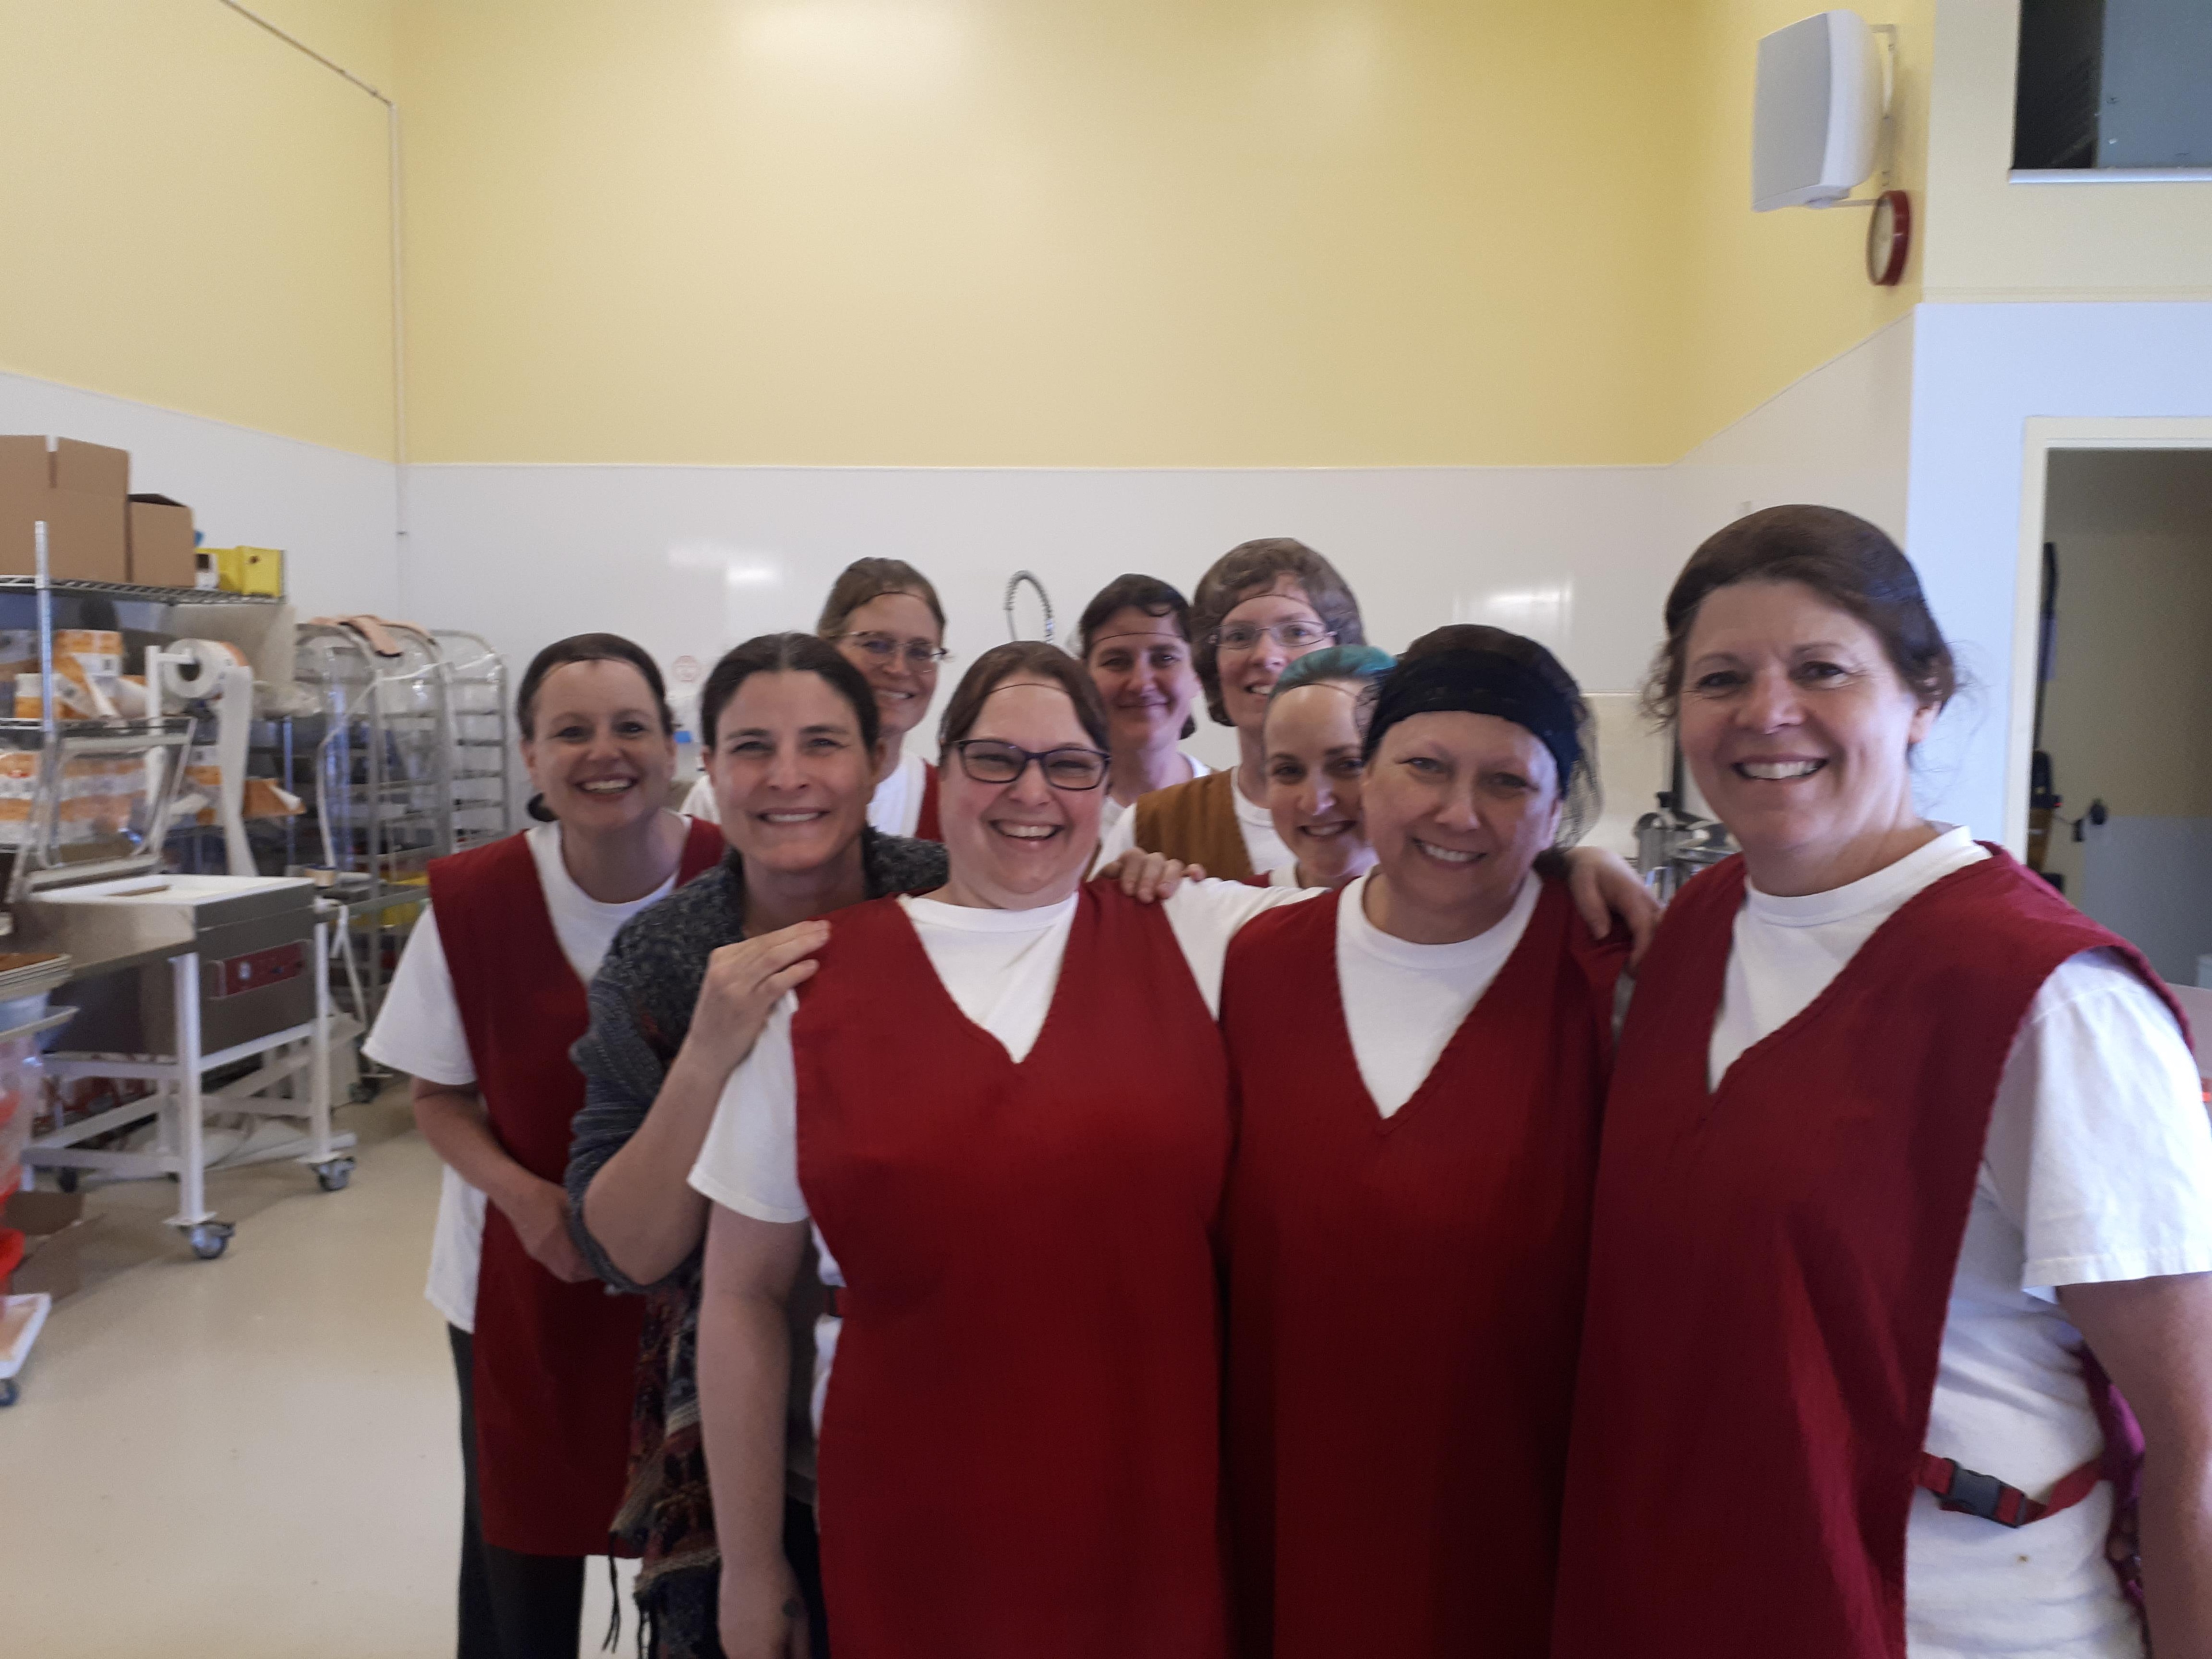 Neuf femmes sourient à la caméra dans une cuisine industrielle